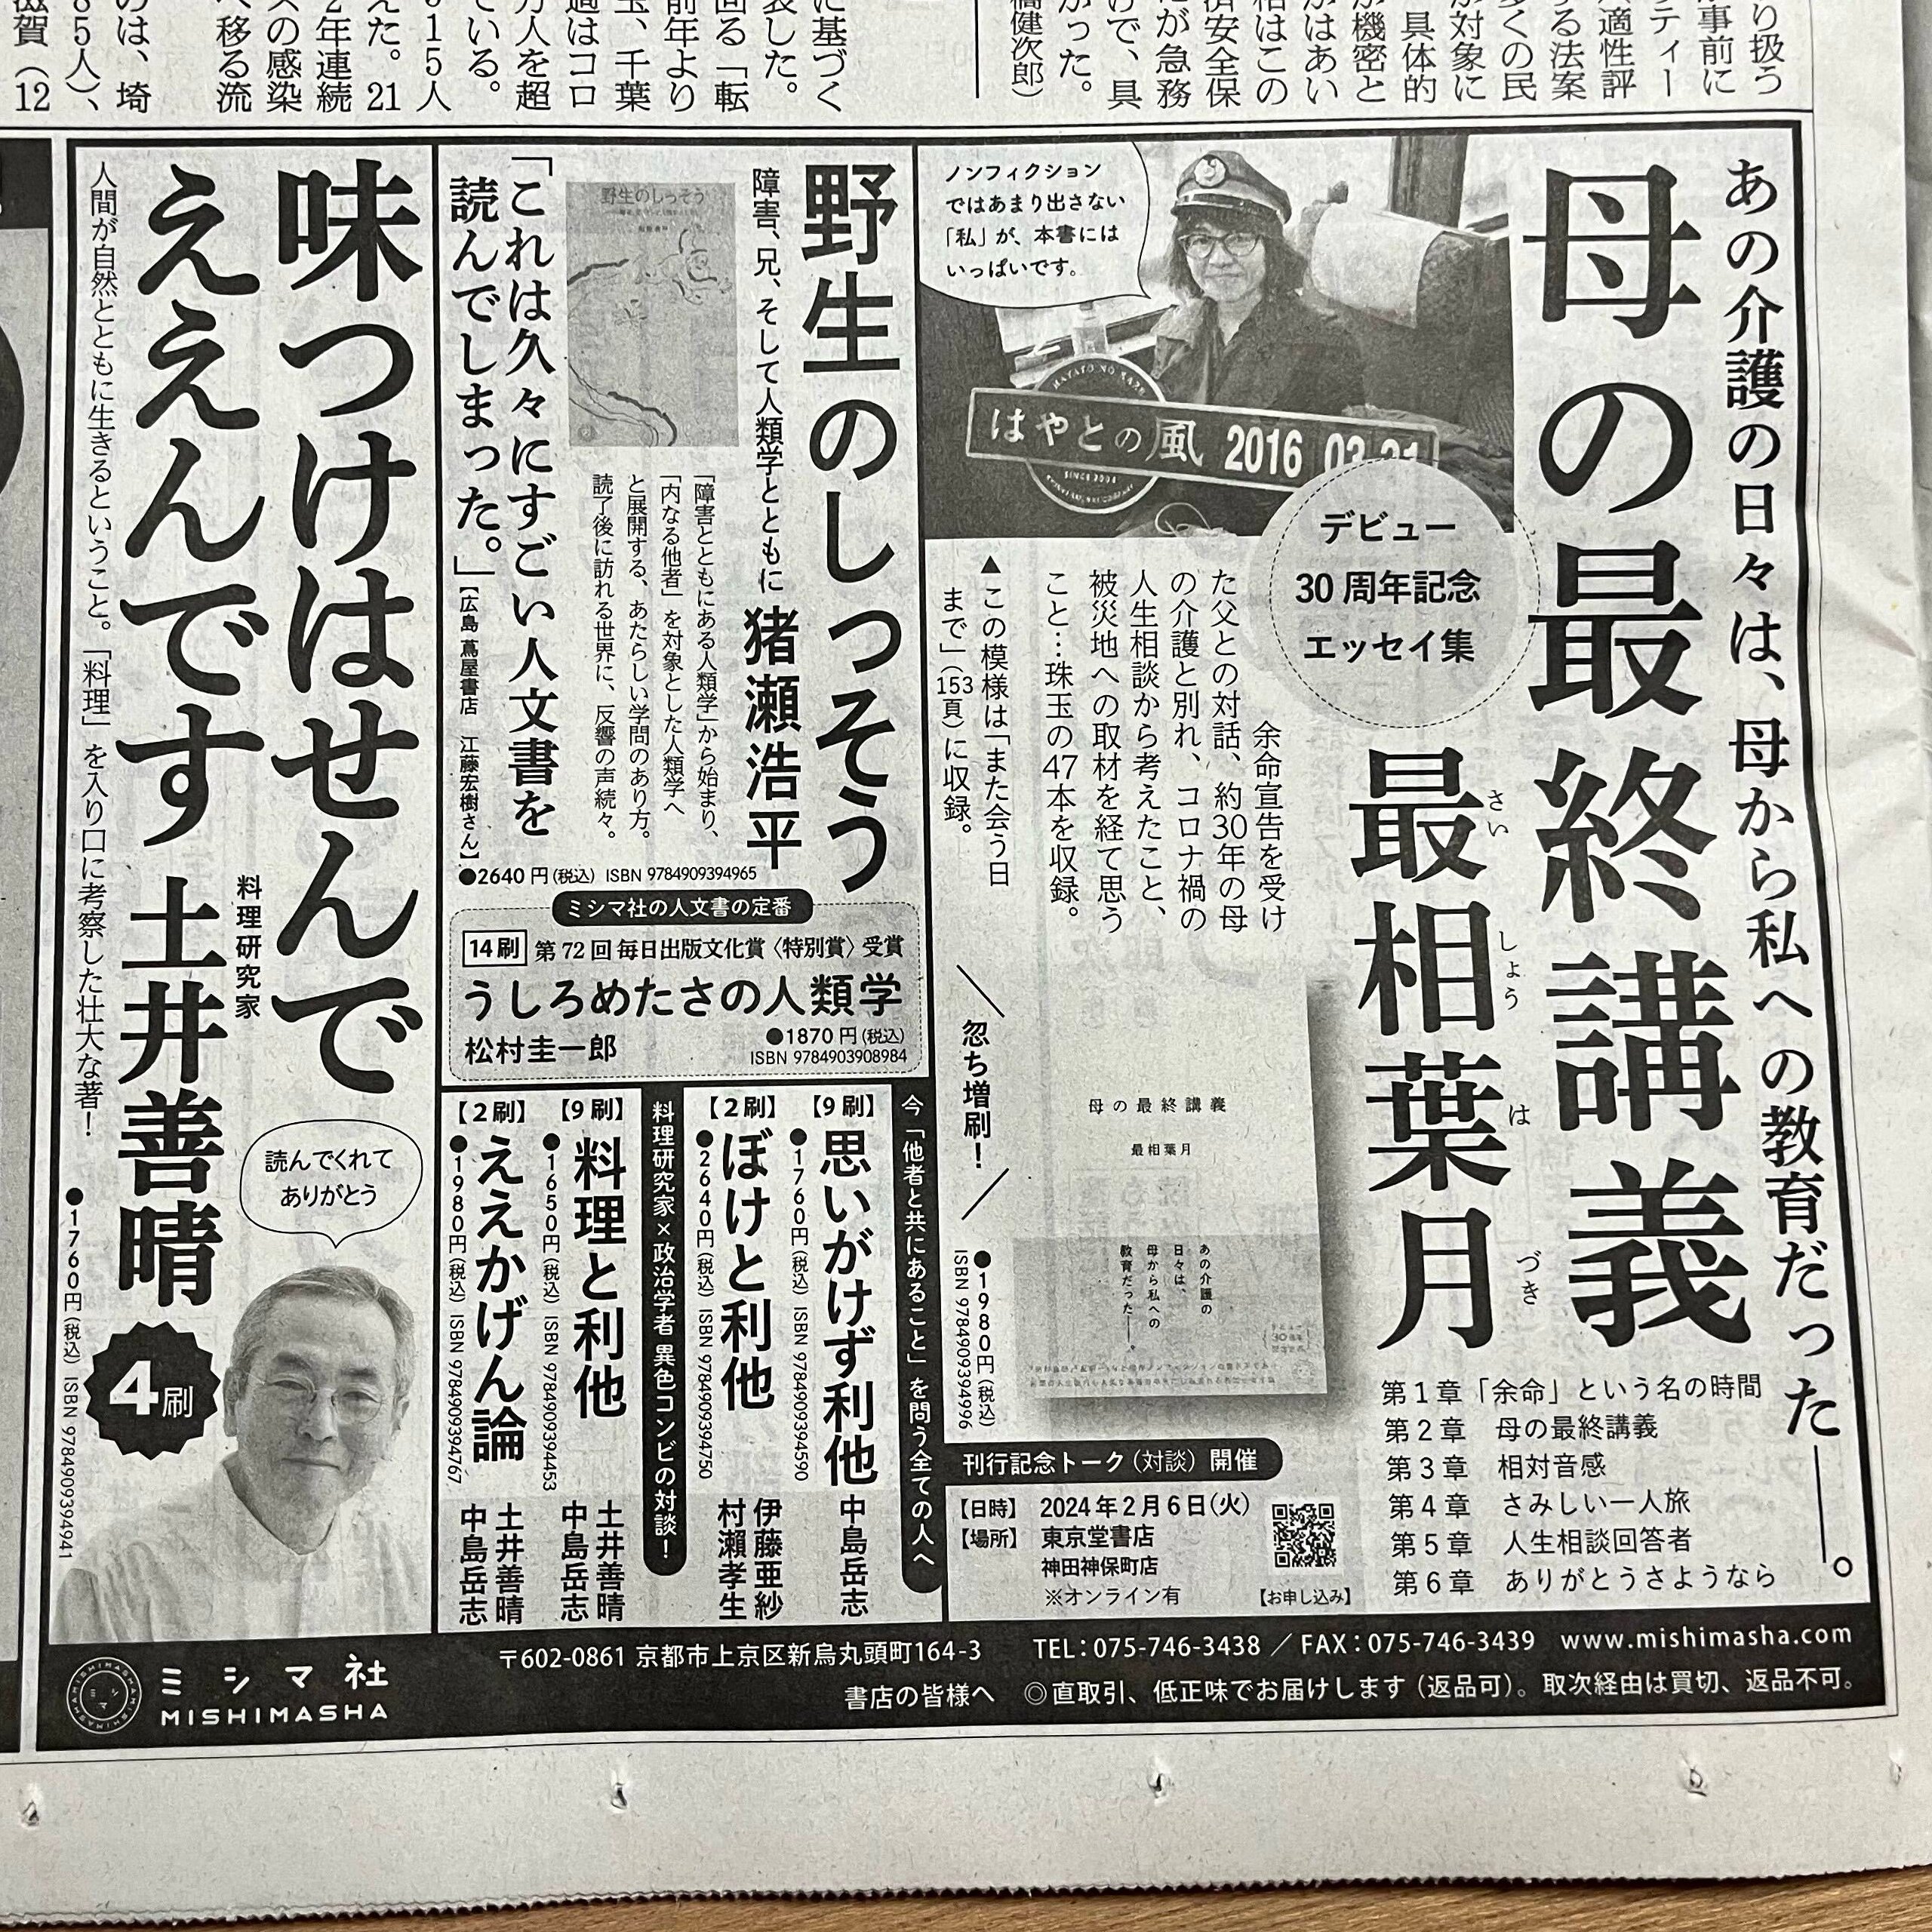 1/31朝日新聞朝刊3面、半５段広告を出稿！